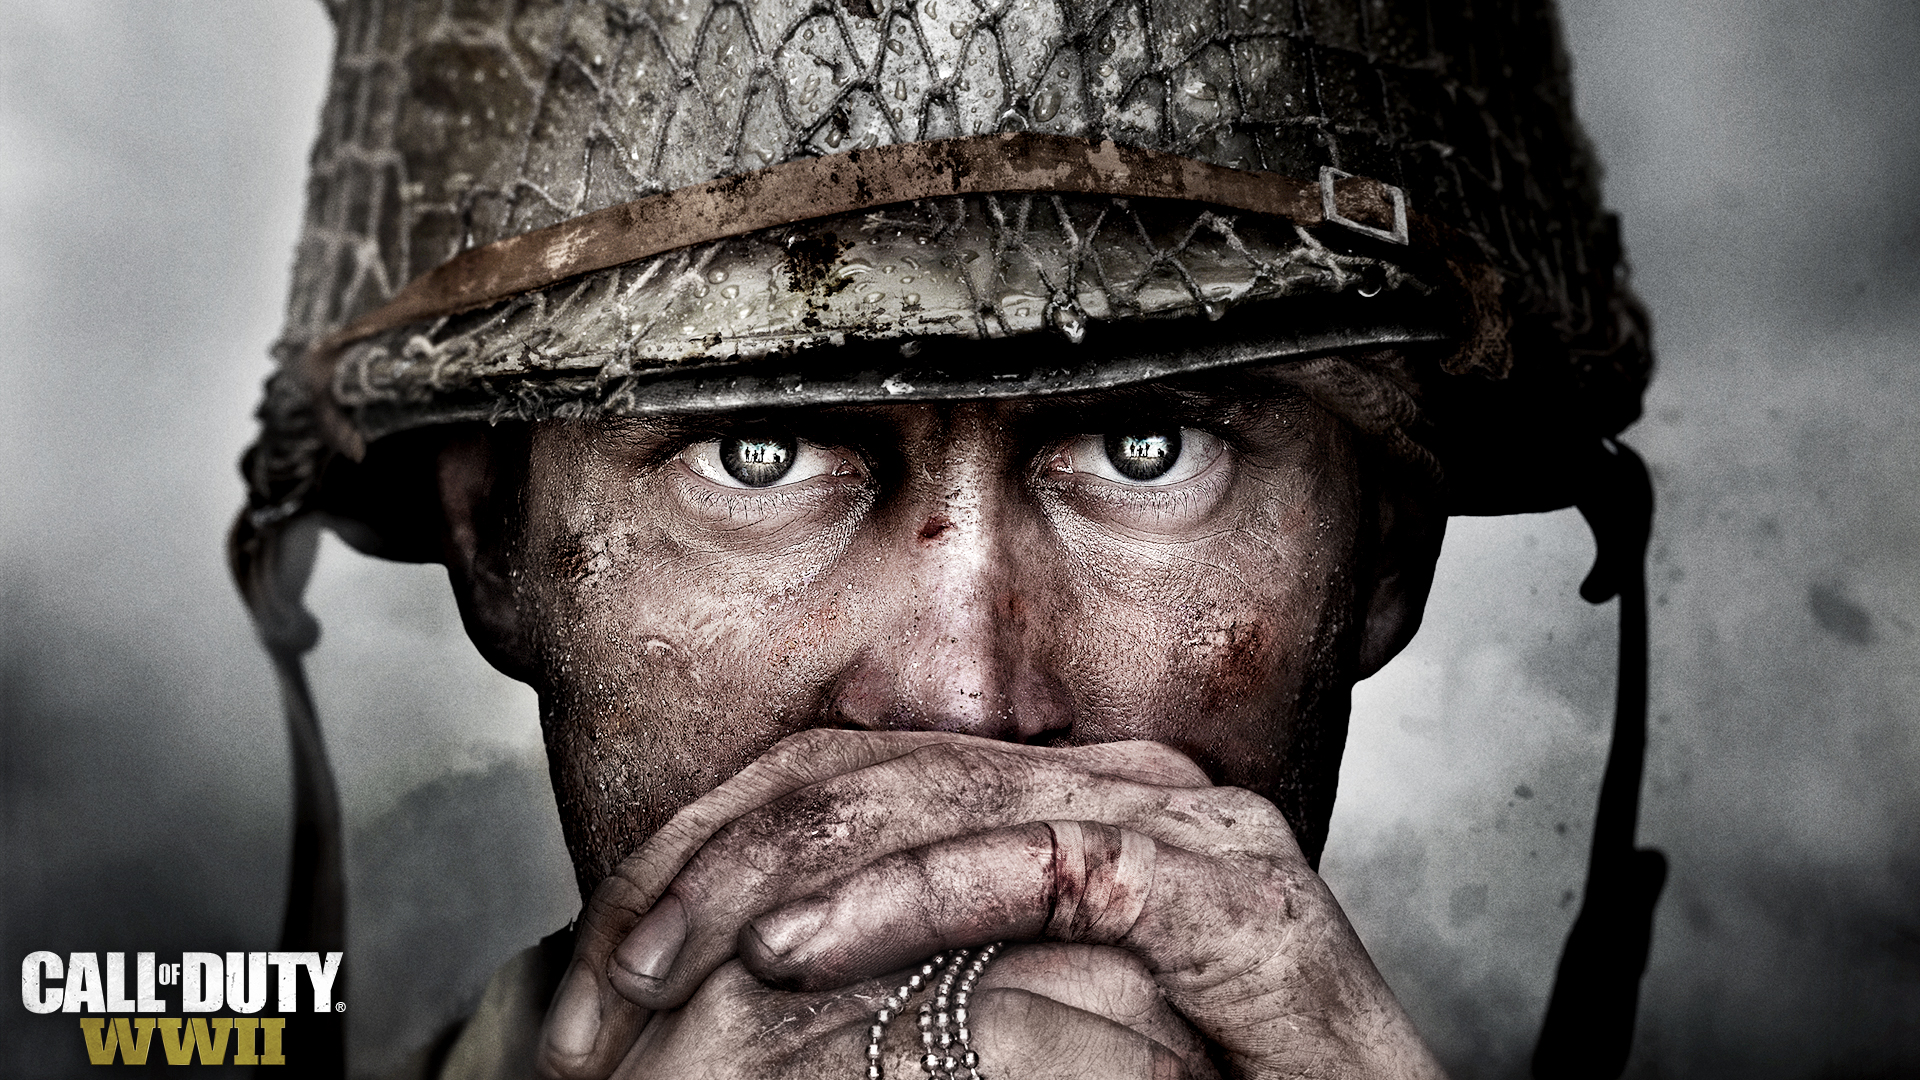 Meilleurs fonds d'écran Call Of Duty: Wwii pour l'écran du téléphone